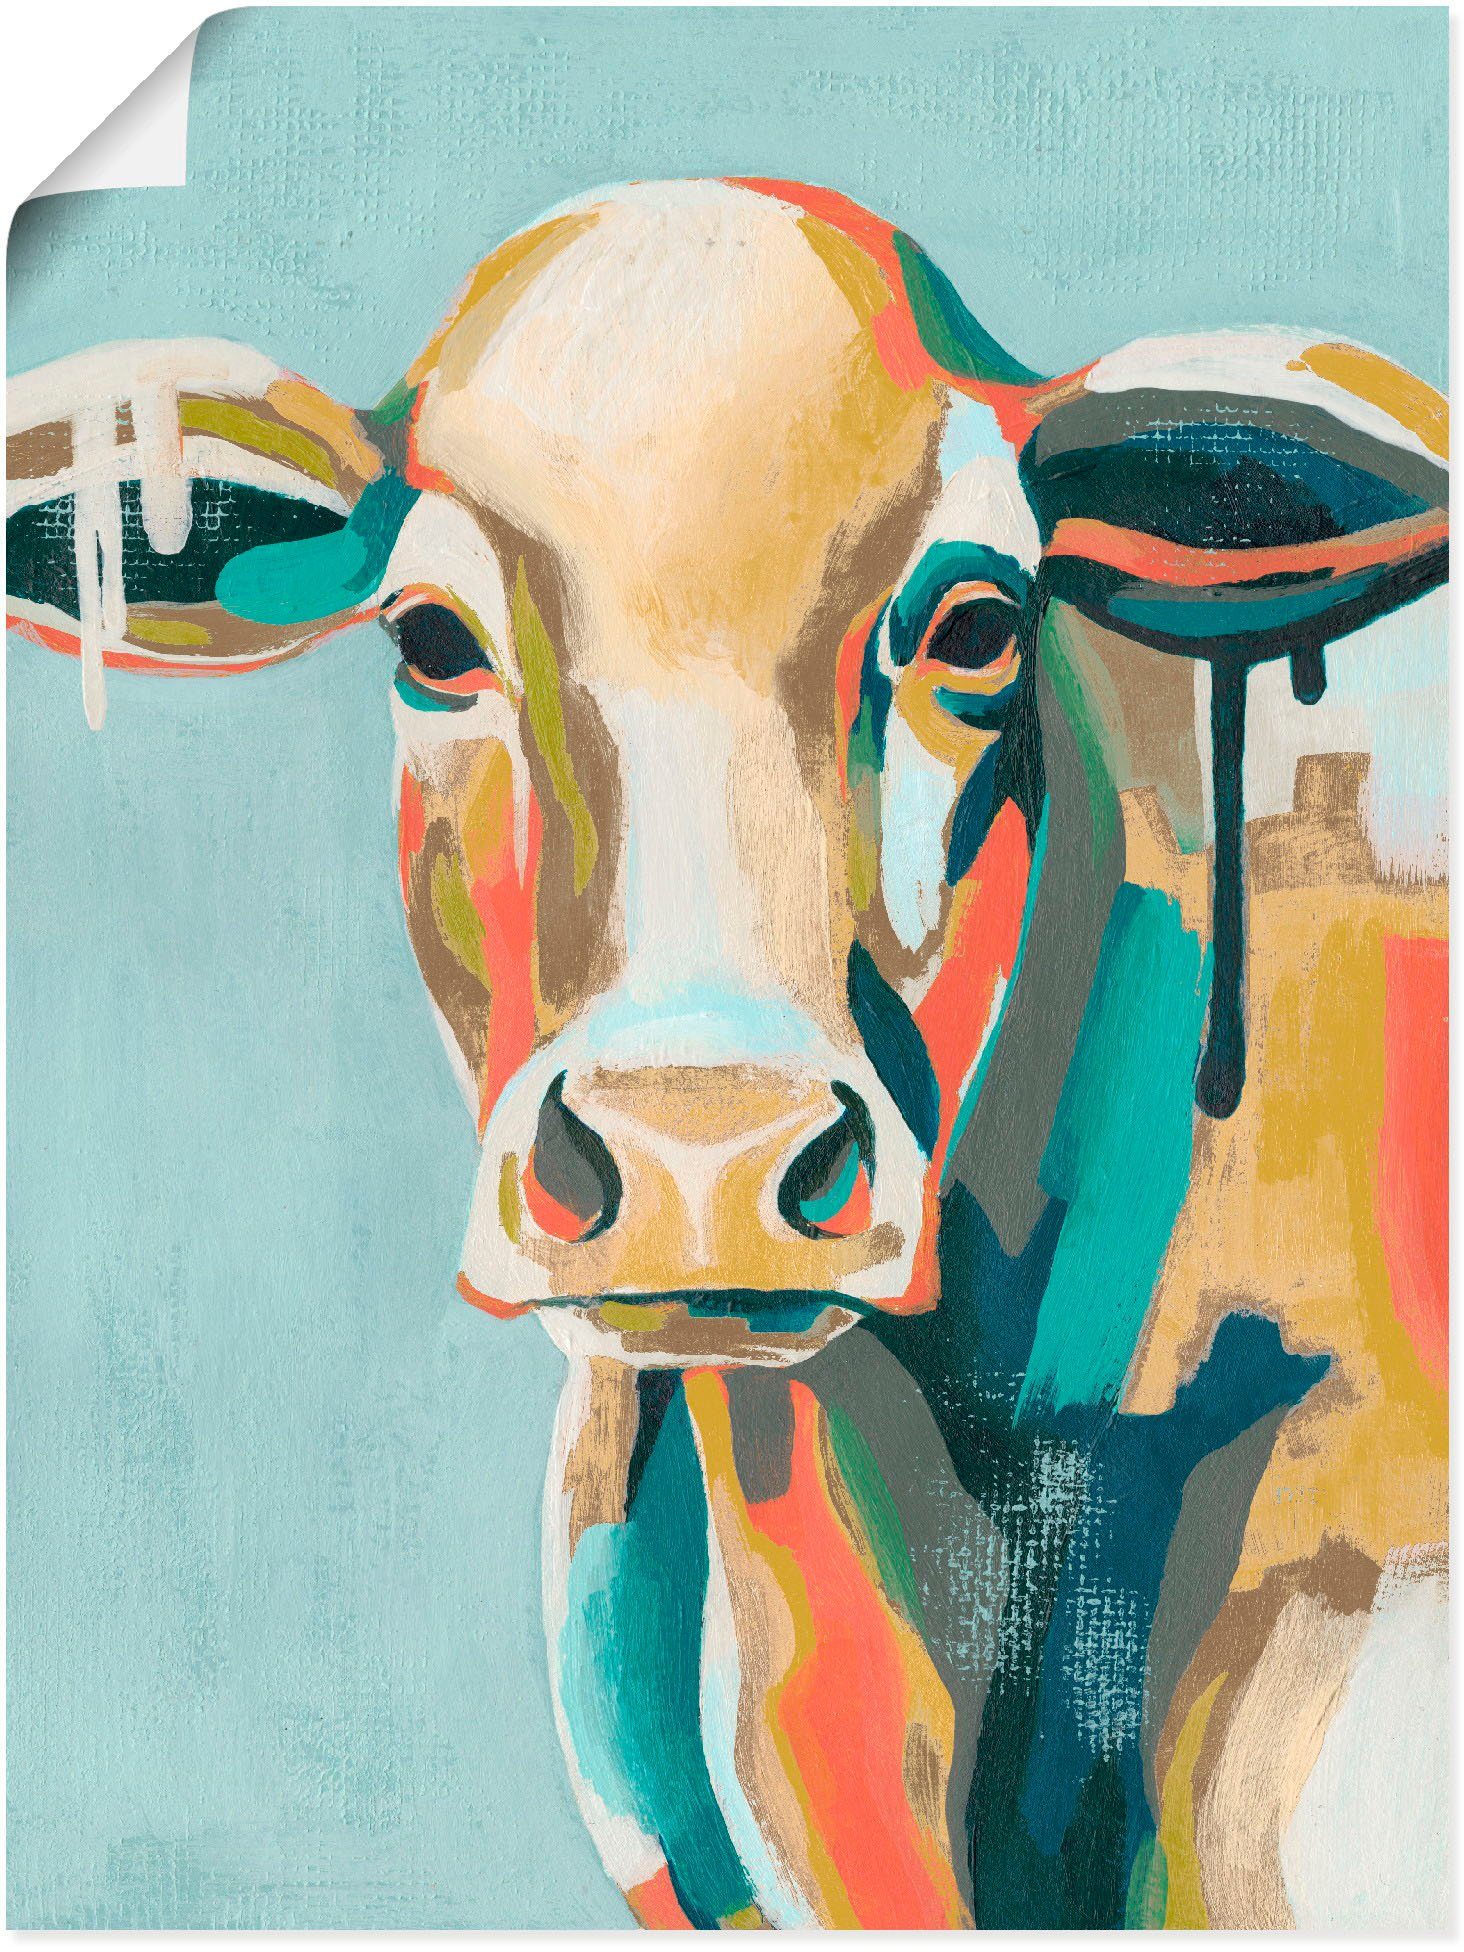 Artland Artprint Veelkleurige koeien I in vele afmetingen & productsoorten - artprint van aluminium / artprint voor buiten, artprint op linnen, poster, muursticker / wandfolie ook